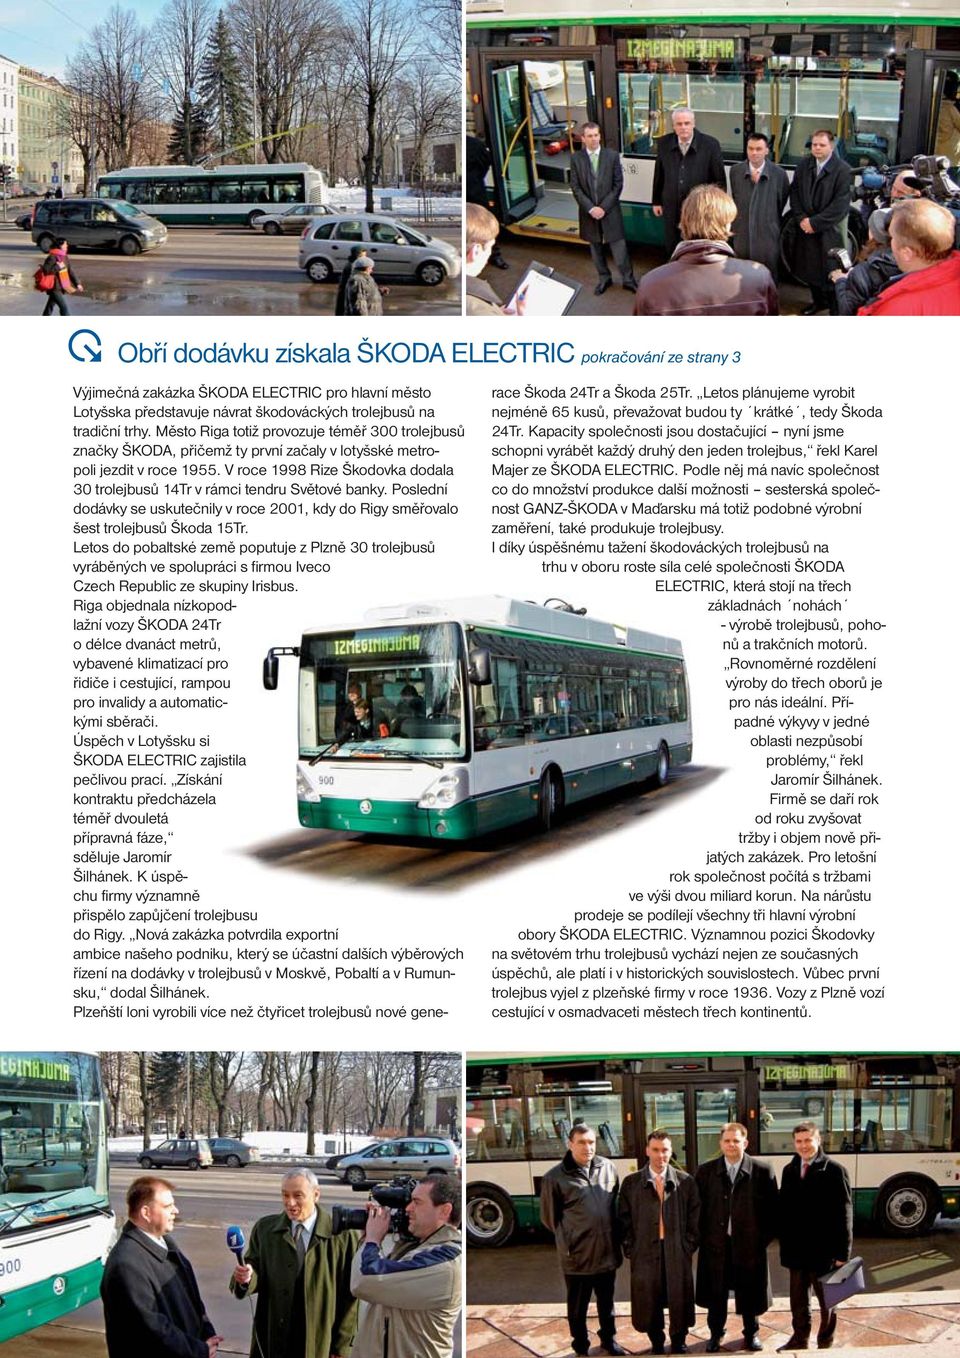 V roce 1998 Rize Škodovka dodala 30 trolejbusů 14Tr v rámci tendru Světové banky. Poslední dodávky se uskutečnily v roce 2001, kdy do Rigy směřovalo šest trolejbusů Škoda 15Tr.